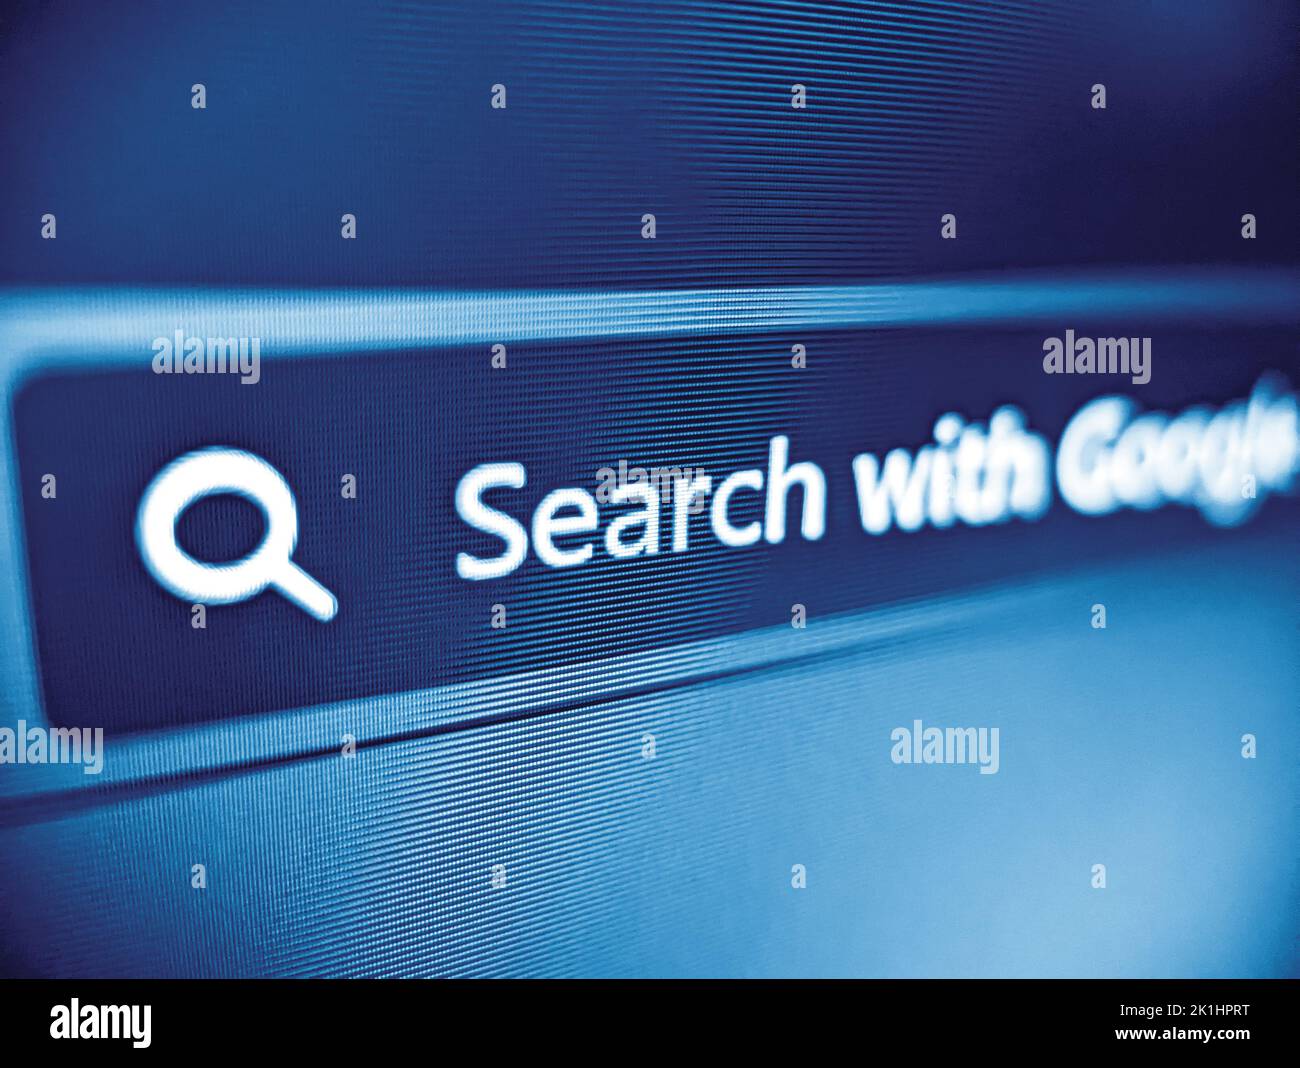 Vue rapprochée d'une zone de recherche de navigateur Web affichée en bleu sur un écran d'ordinateur pixélisé Banque D'Images